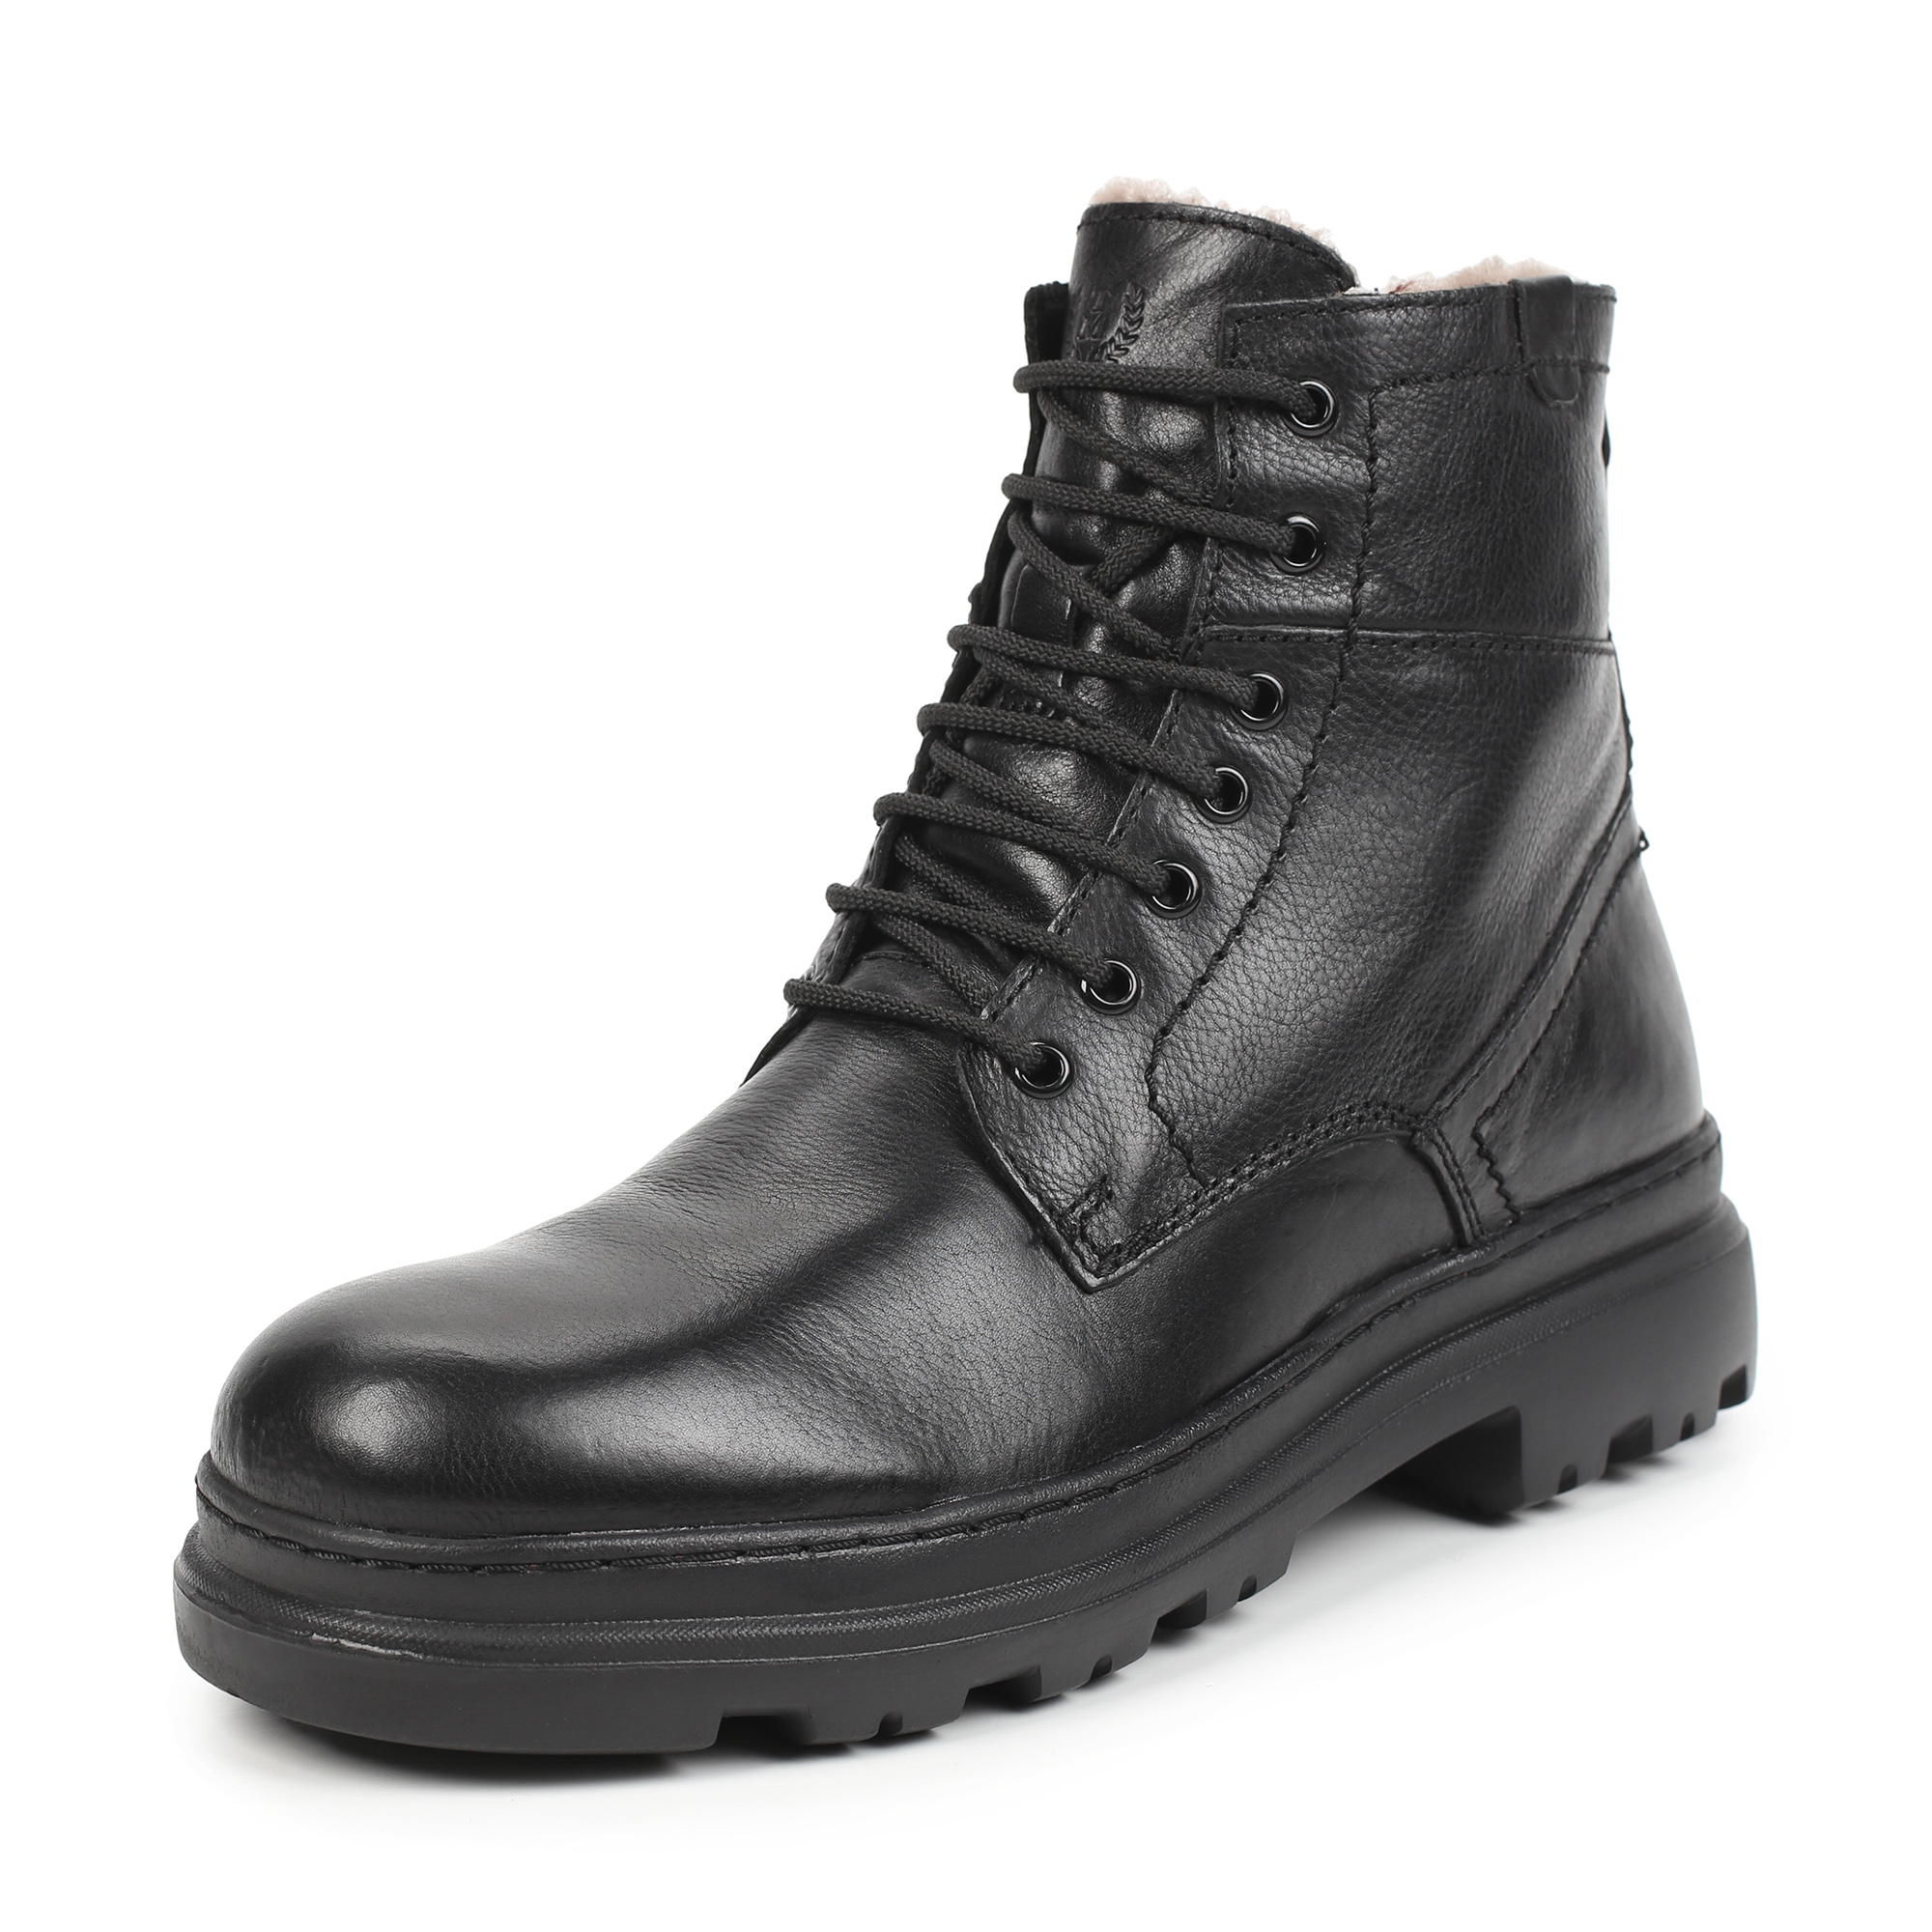 Ботинки Thomas Munz 569-125-TM04, цвет черный, размер 40 - фото 2